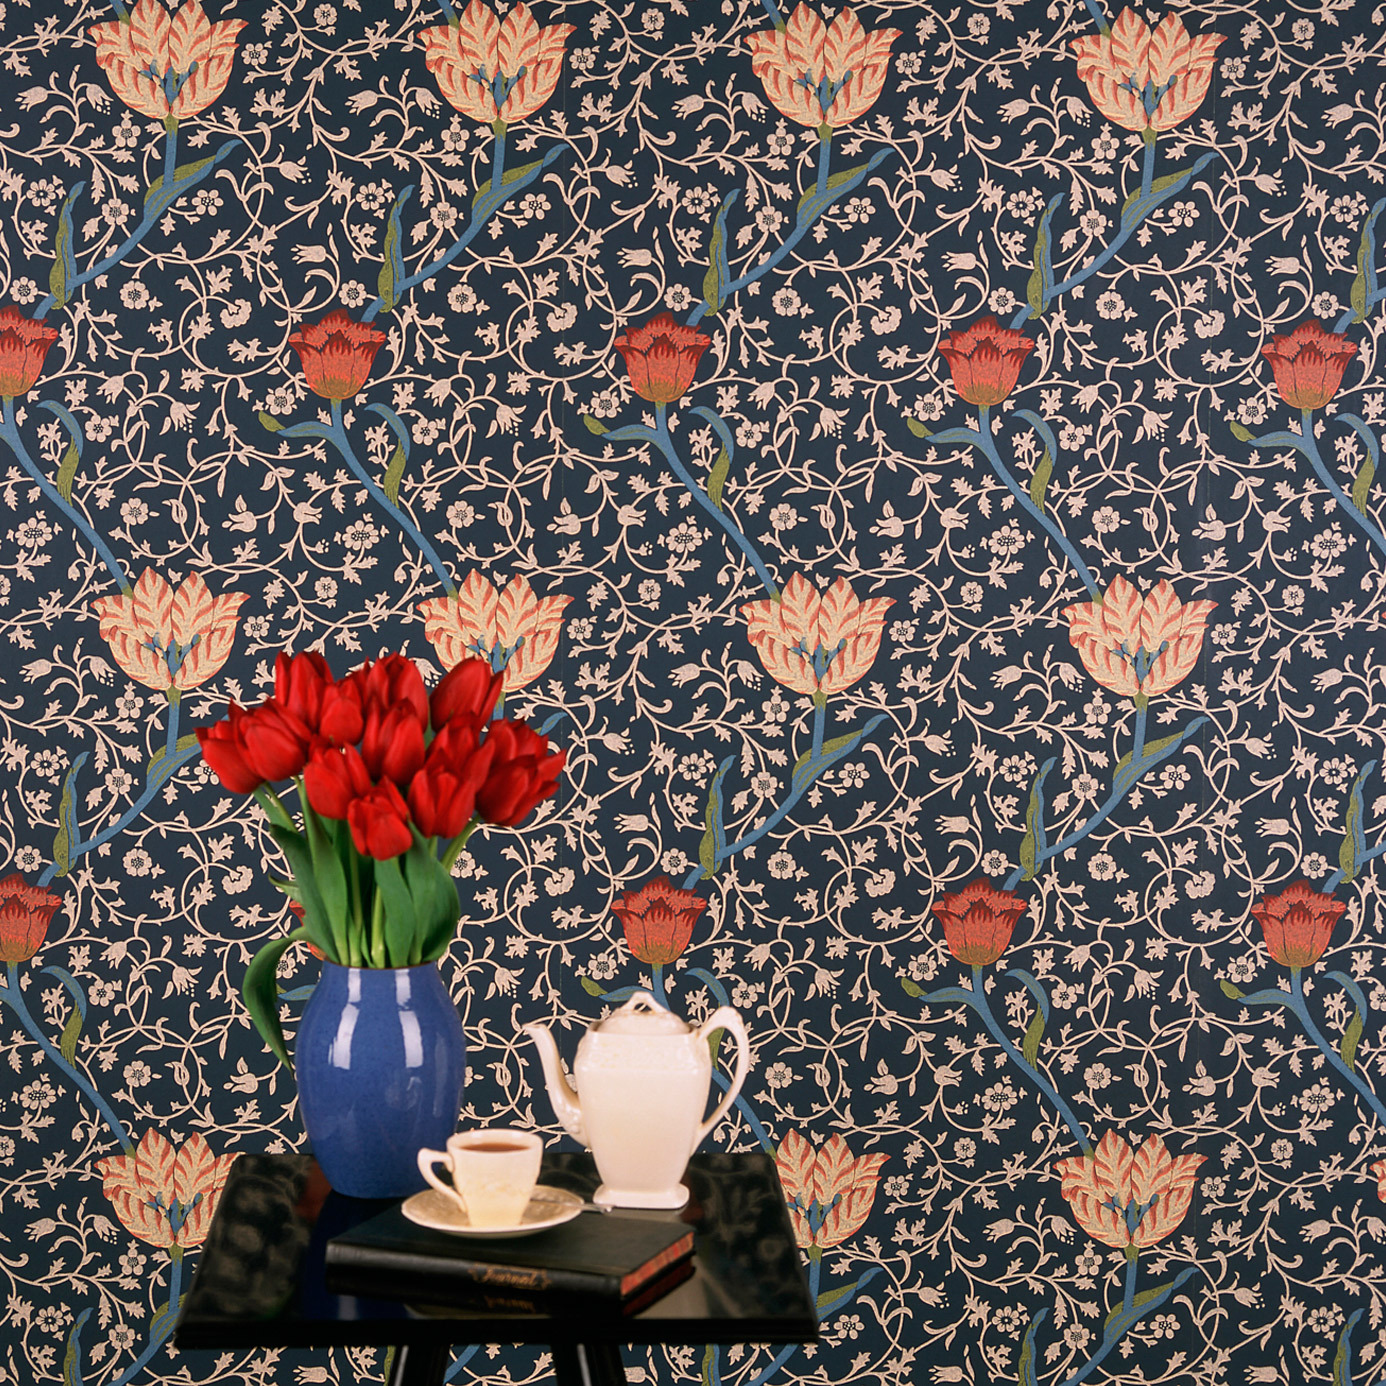 Garden Tulip Vanilla/Russet Wallpaper by MOR